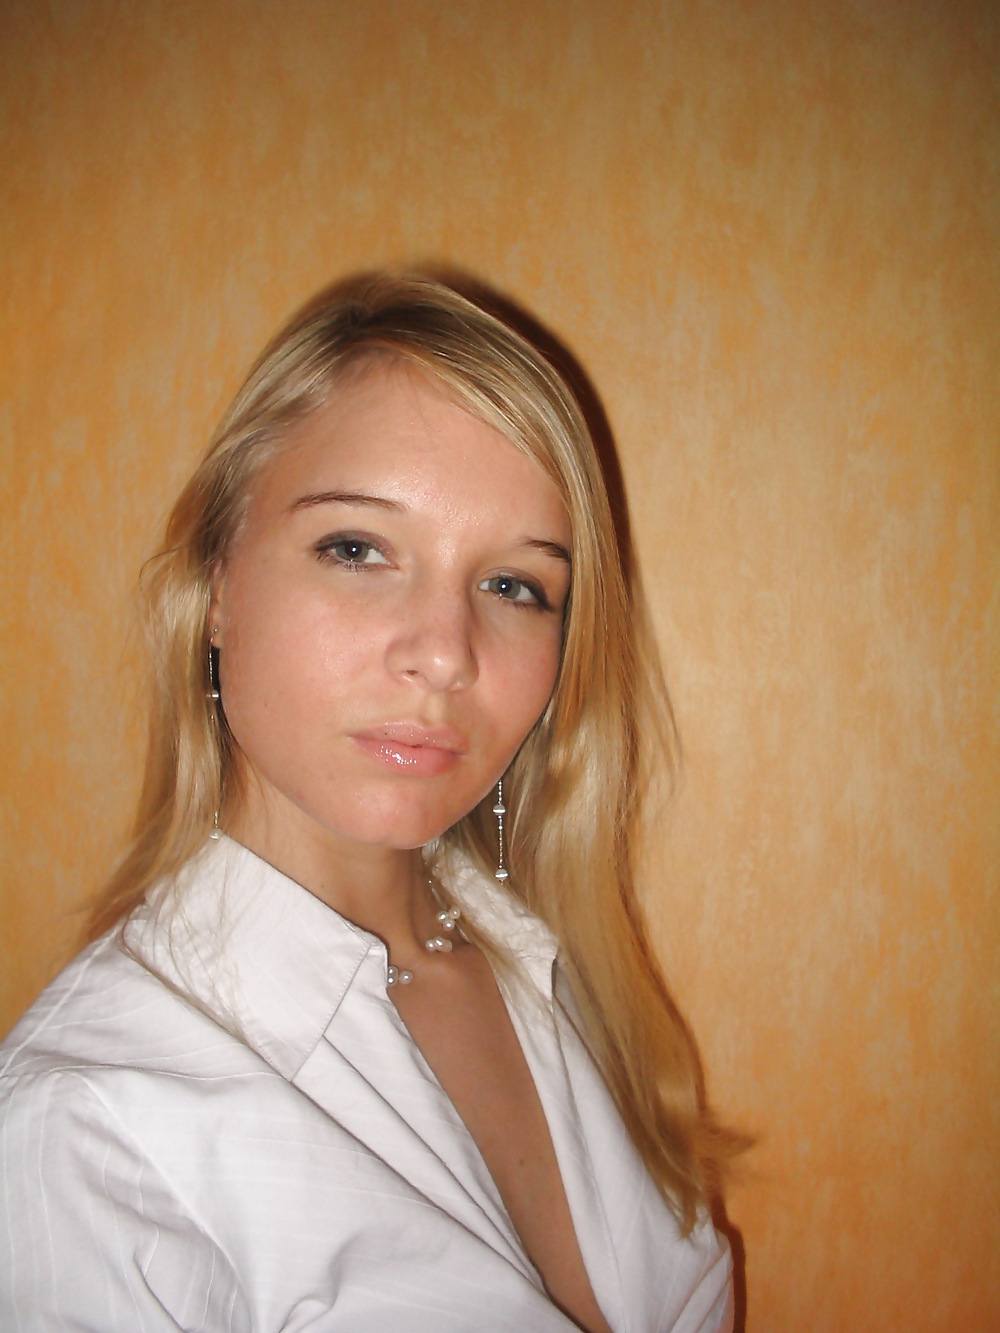 Hot ex russian teen girlfriend #7485030